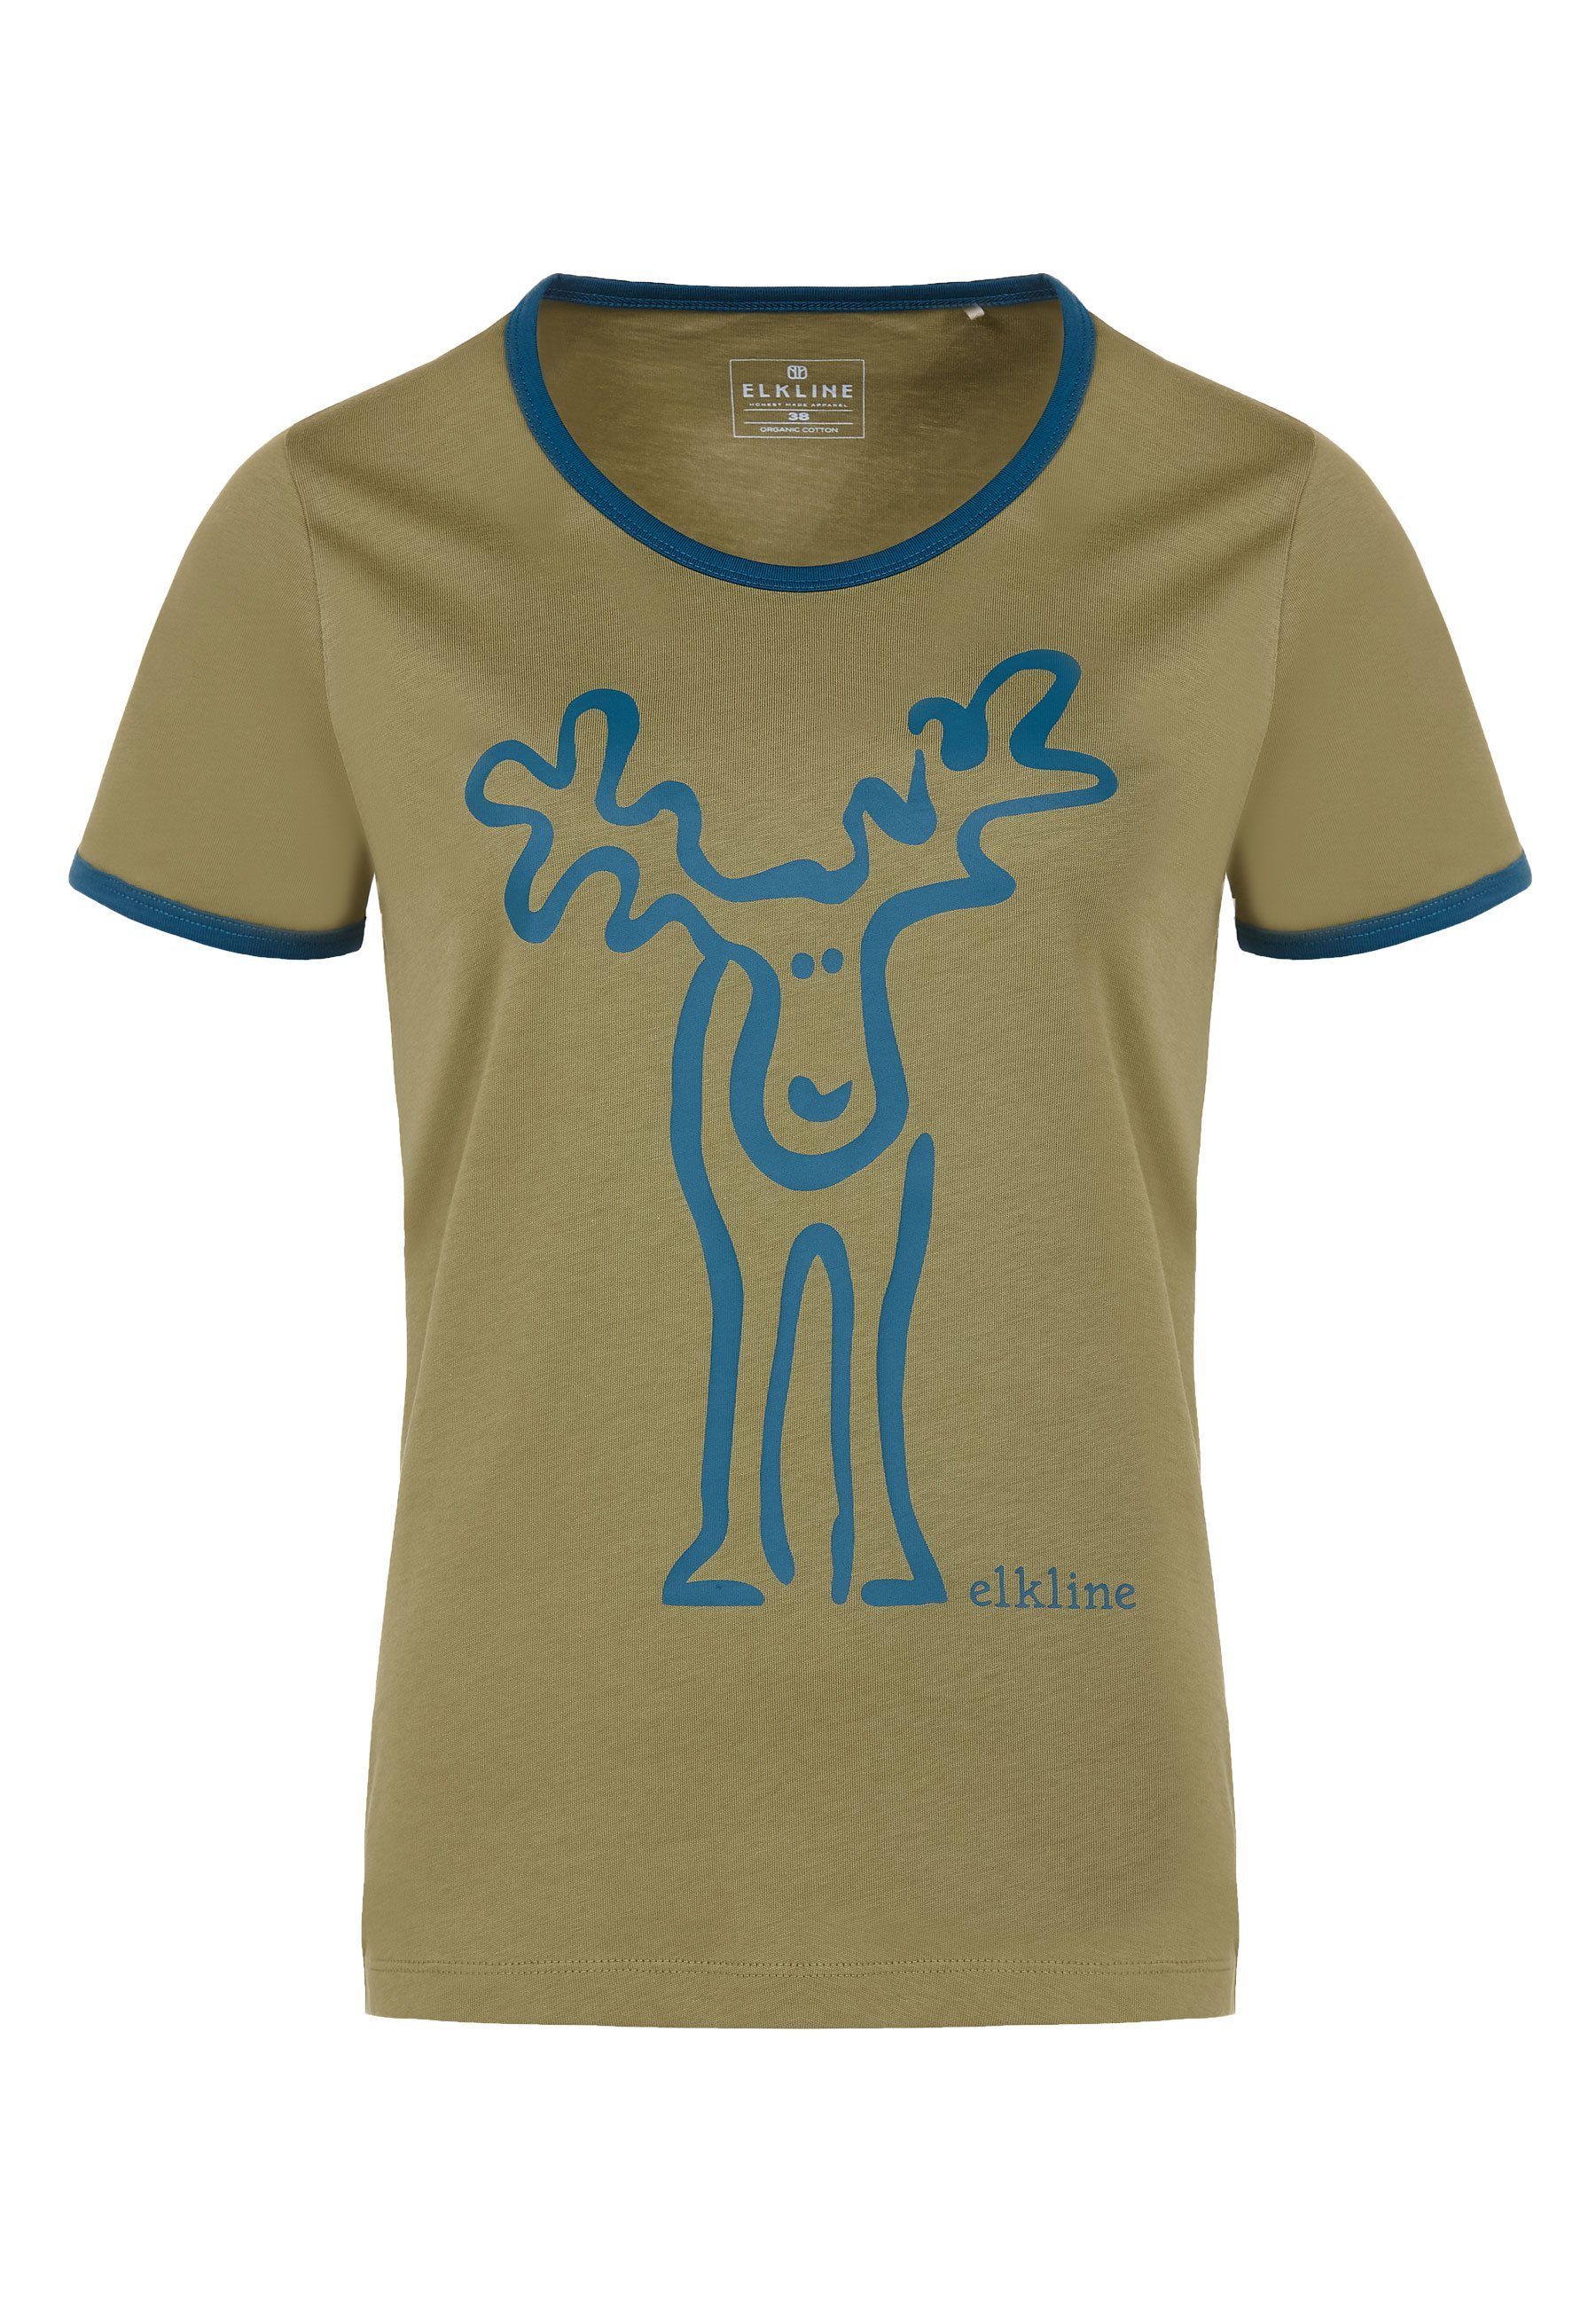 Elkline T-Shirt Elch Retro blue Rudolfine Rücken coral Print avocado Brust und 